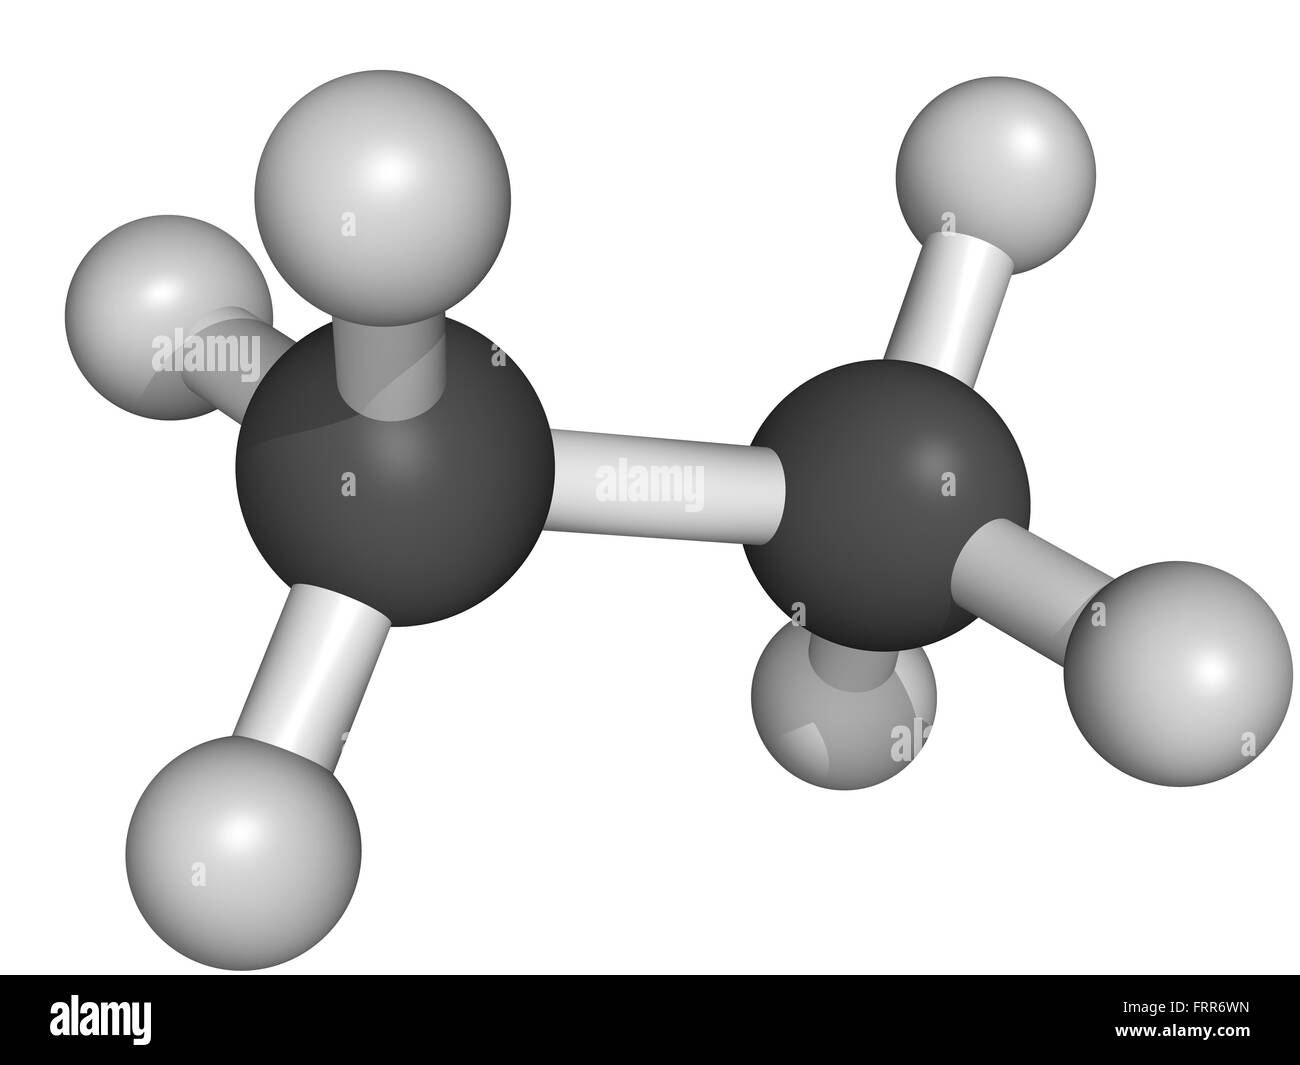 Molekulares modell der atome Schwarzweiß-Stockfotos und -bilder - Alamy